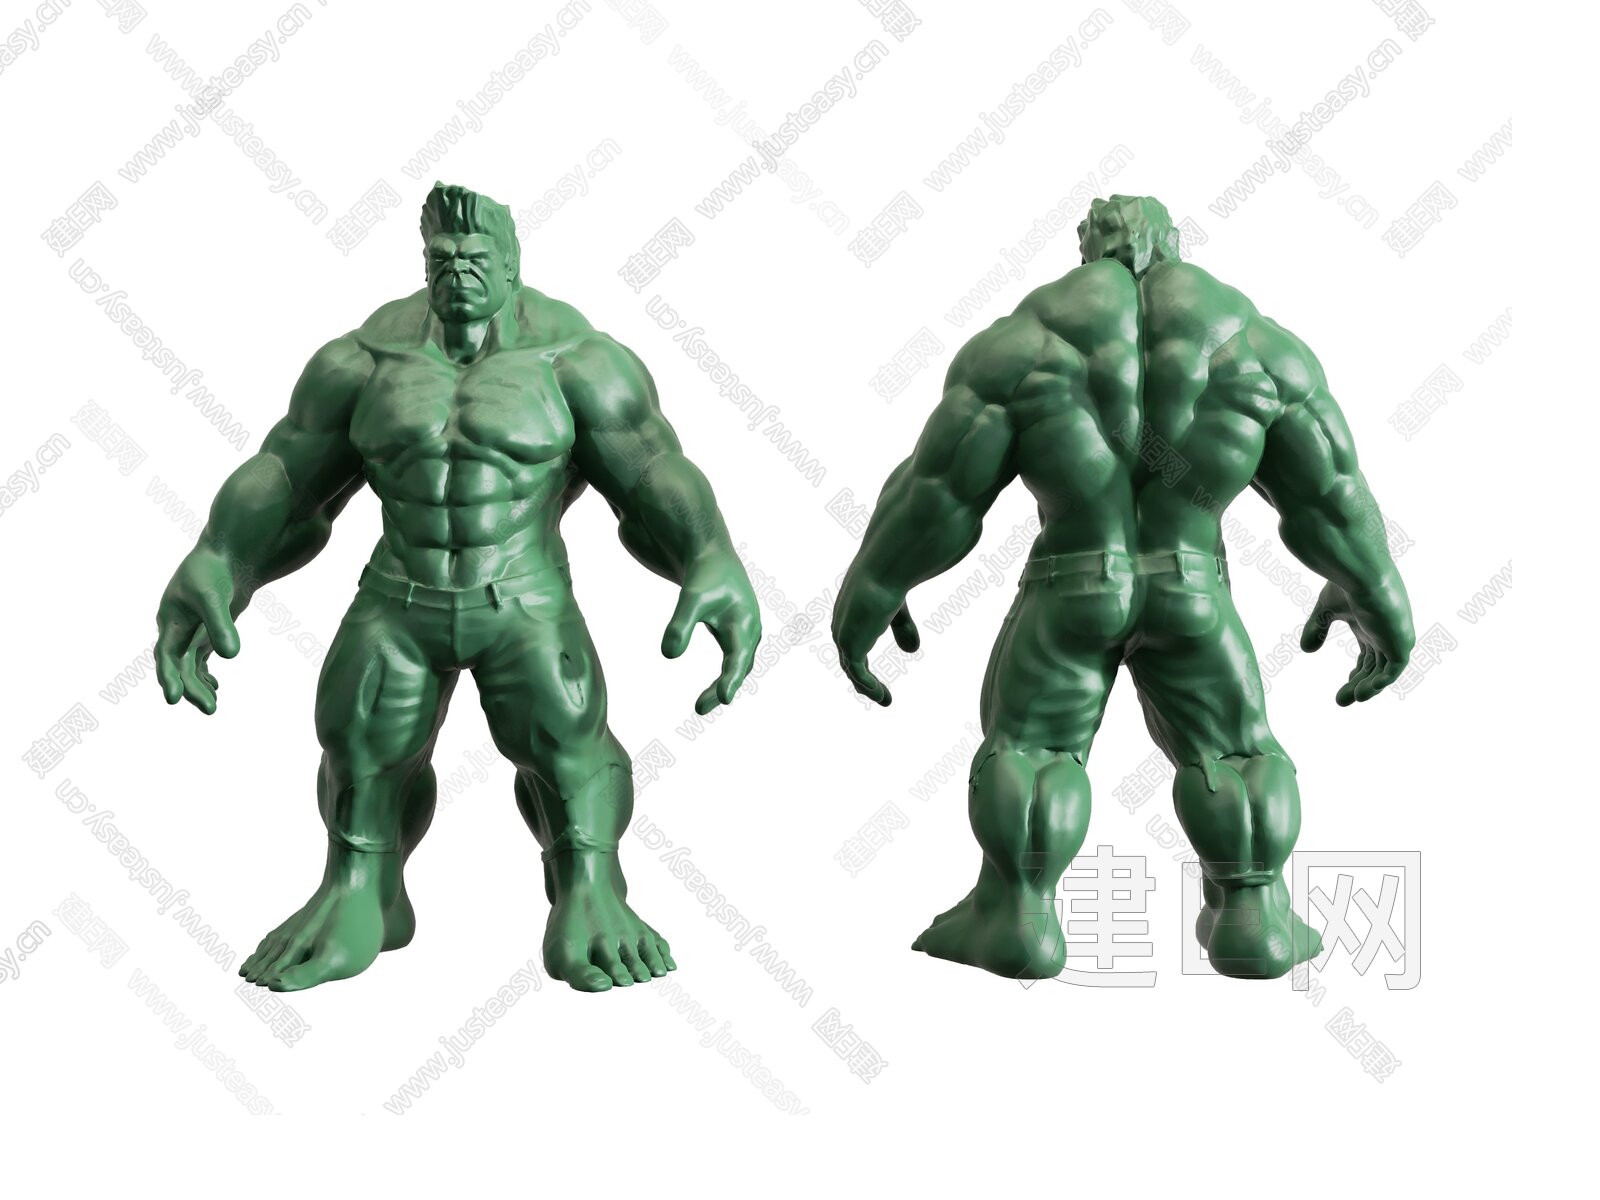 壁纸1024×768无敌绿巨人 神奇绿巨人 电影壁纸壁纸,《神奇绿巨人 The Incredible Hulk》官方壁纸壁纸图片-影视壁纸 ...